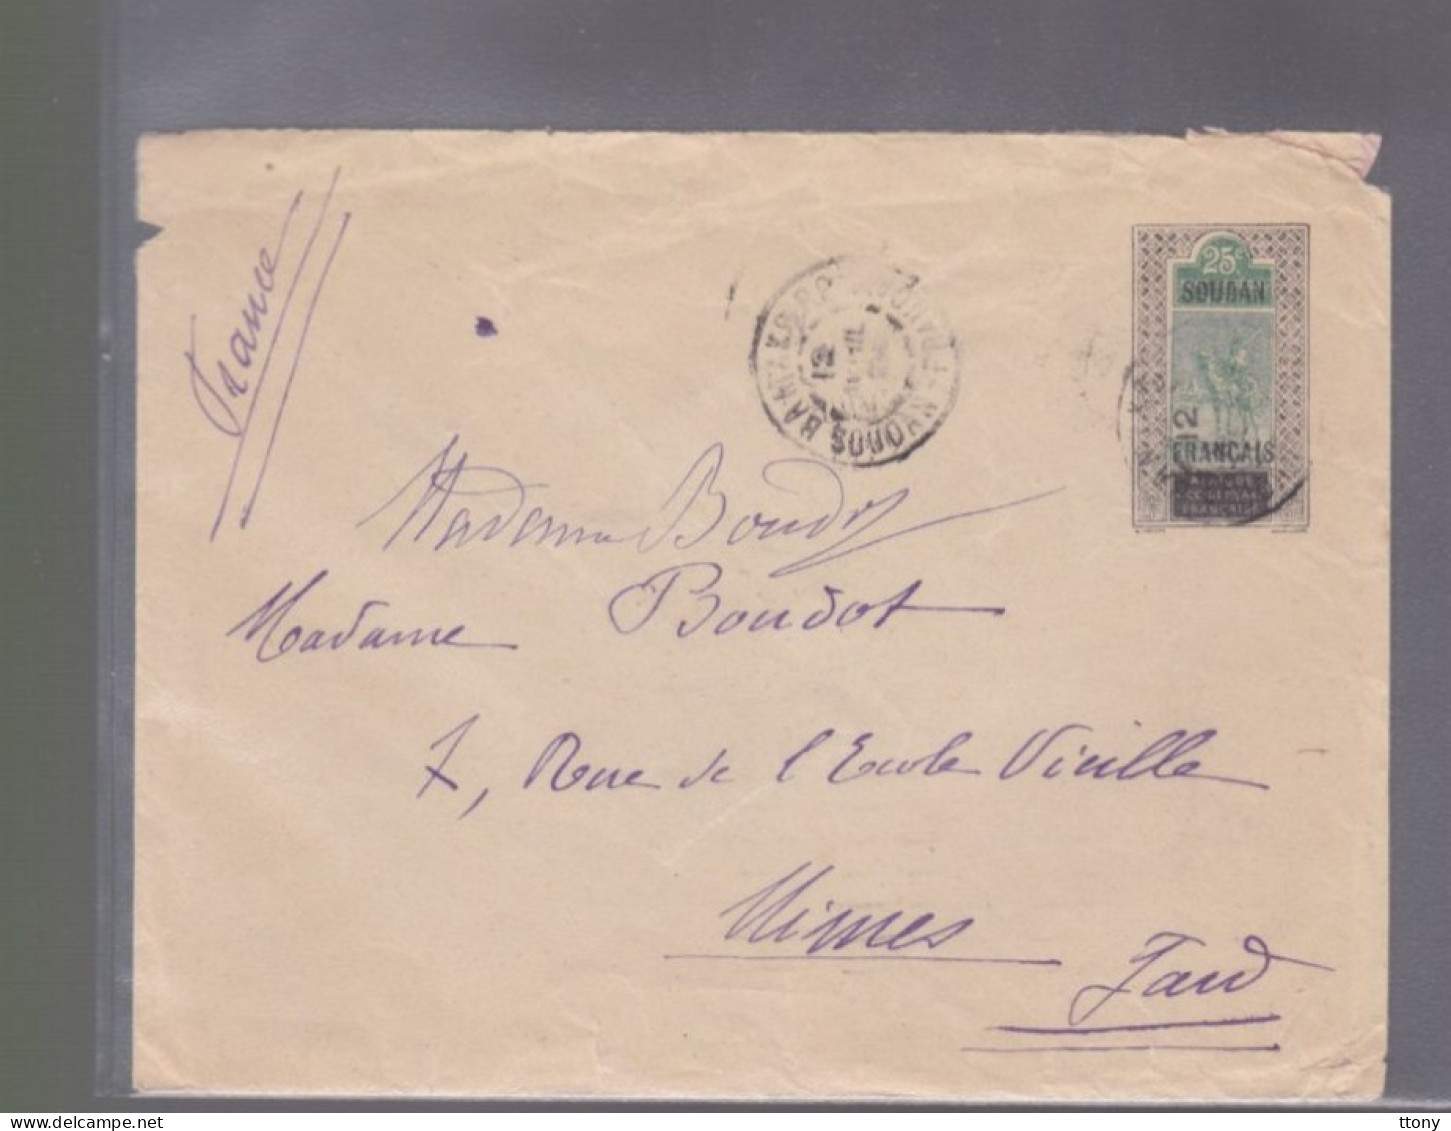 1  Timbres Soudan Français     25 C   Année 1924  Destination   Nîmes      Gard ( Sans Correspondance ) - Briefe U. Dokumente